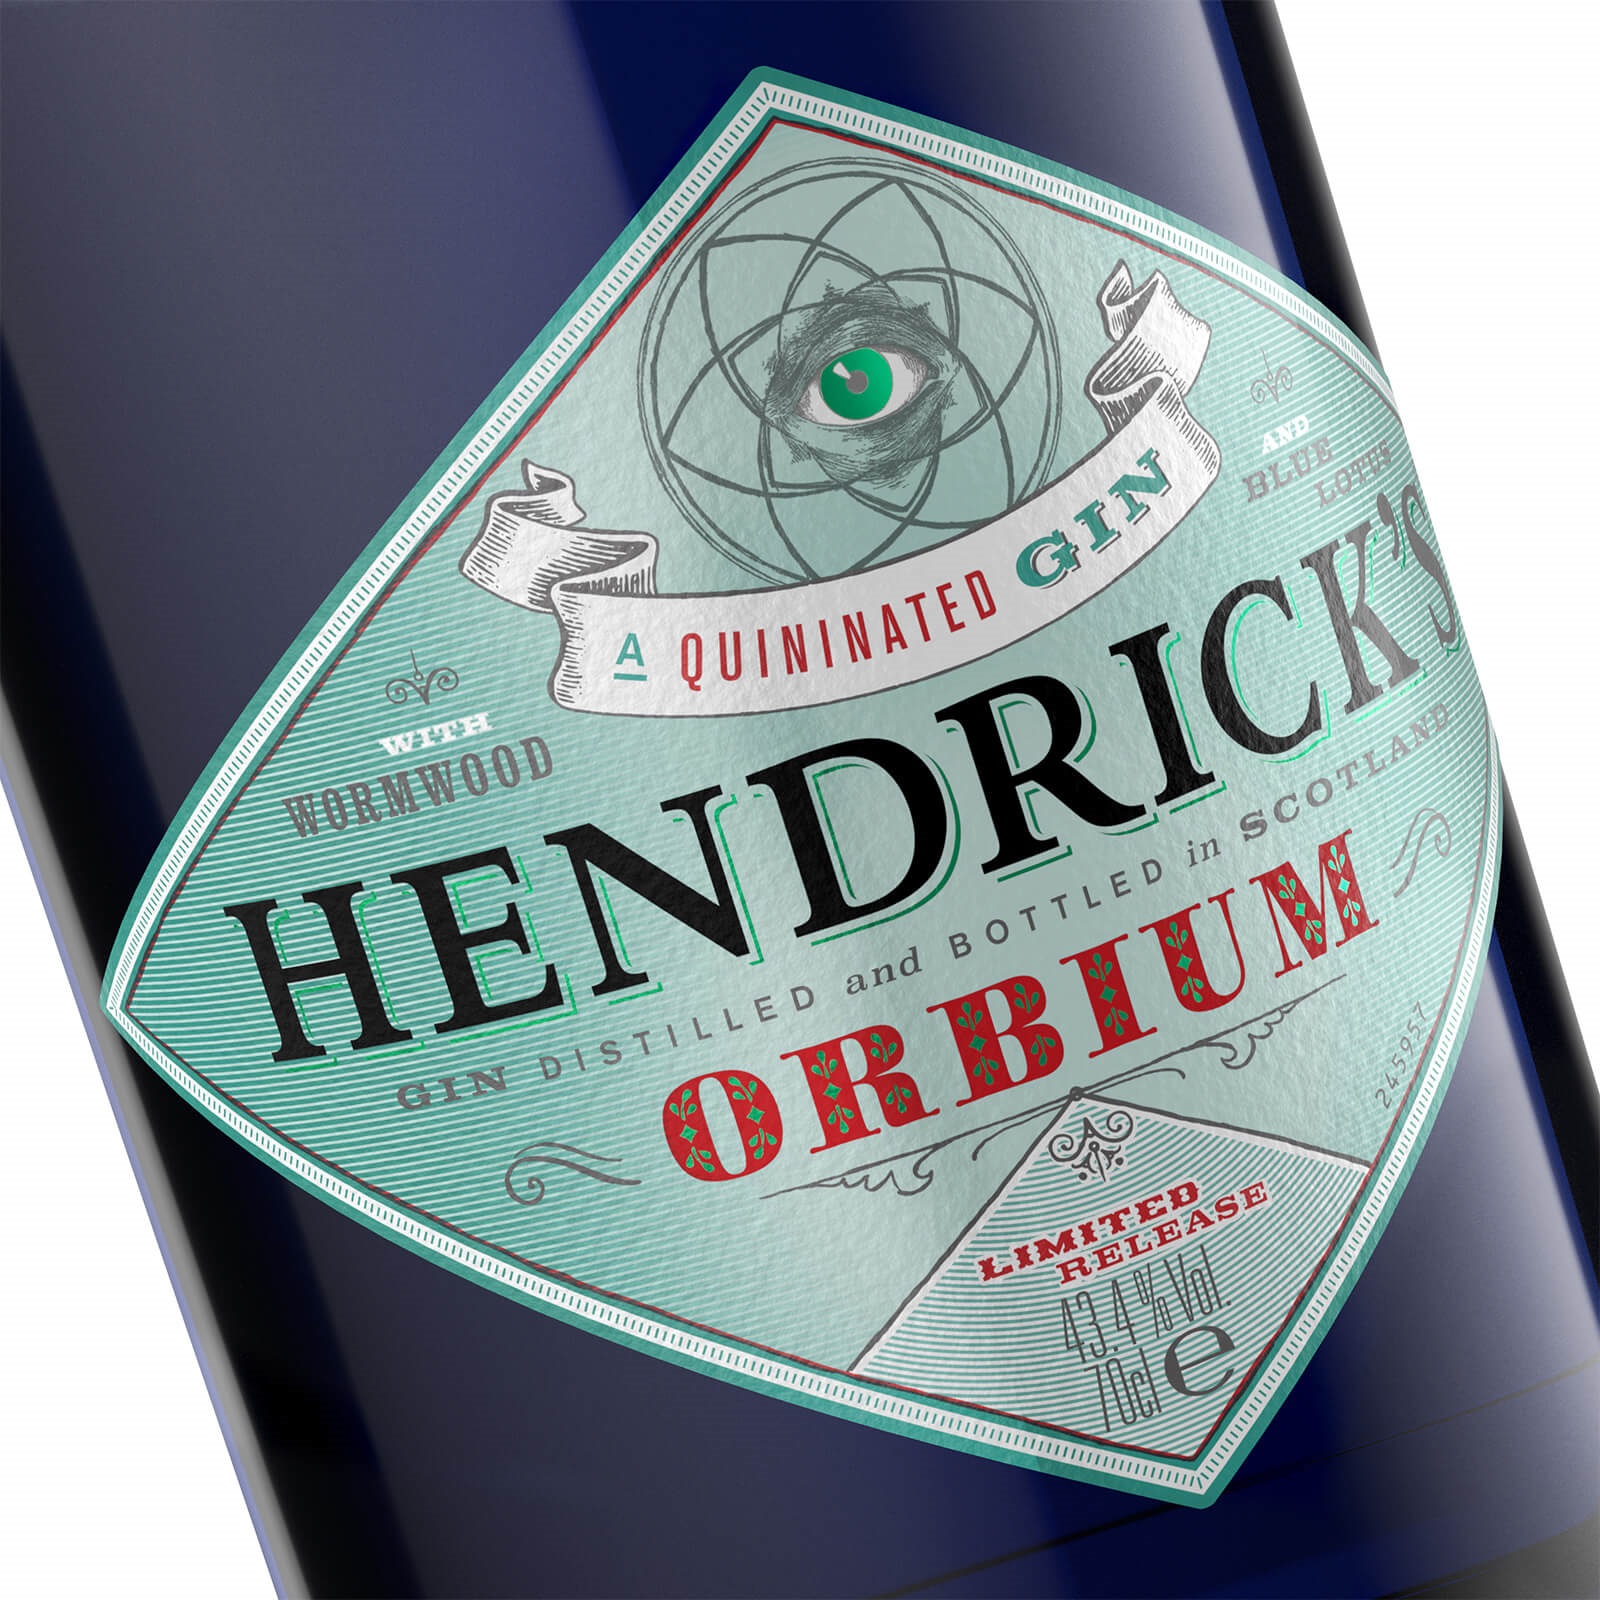 Hendrick's Gin (70CL) - Jeroboams